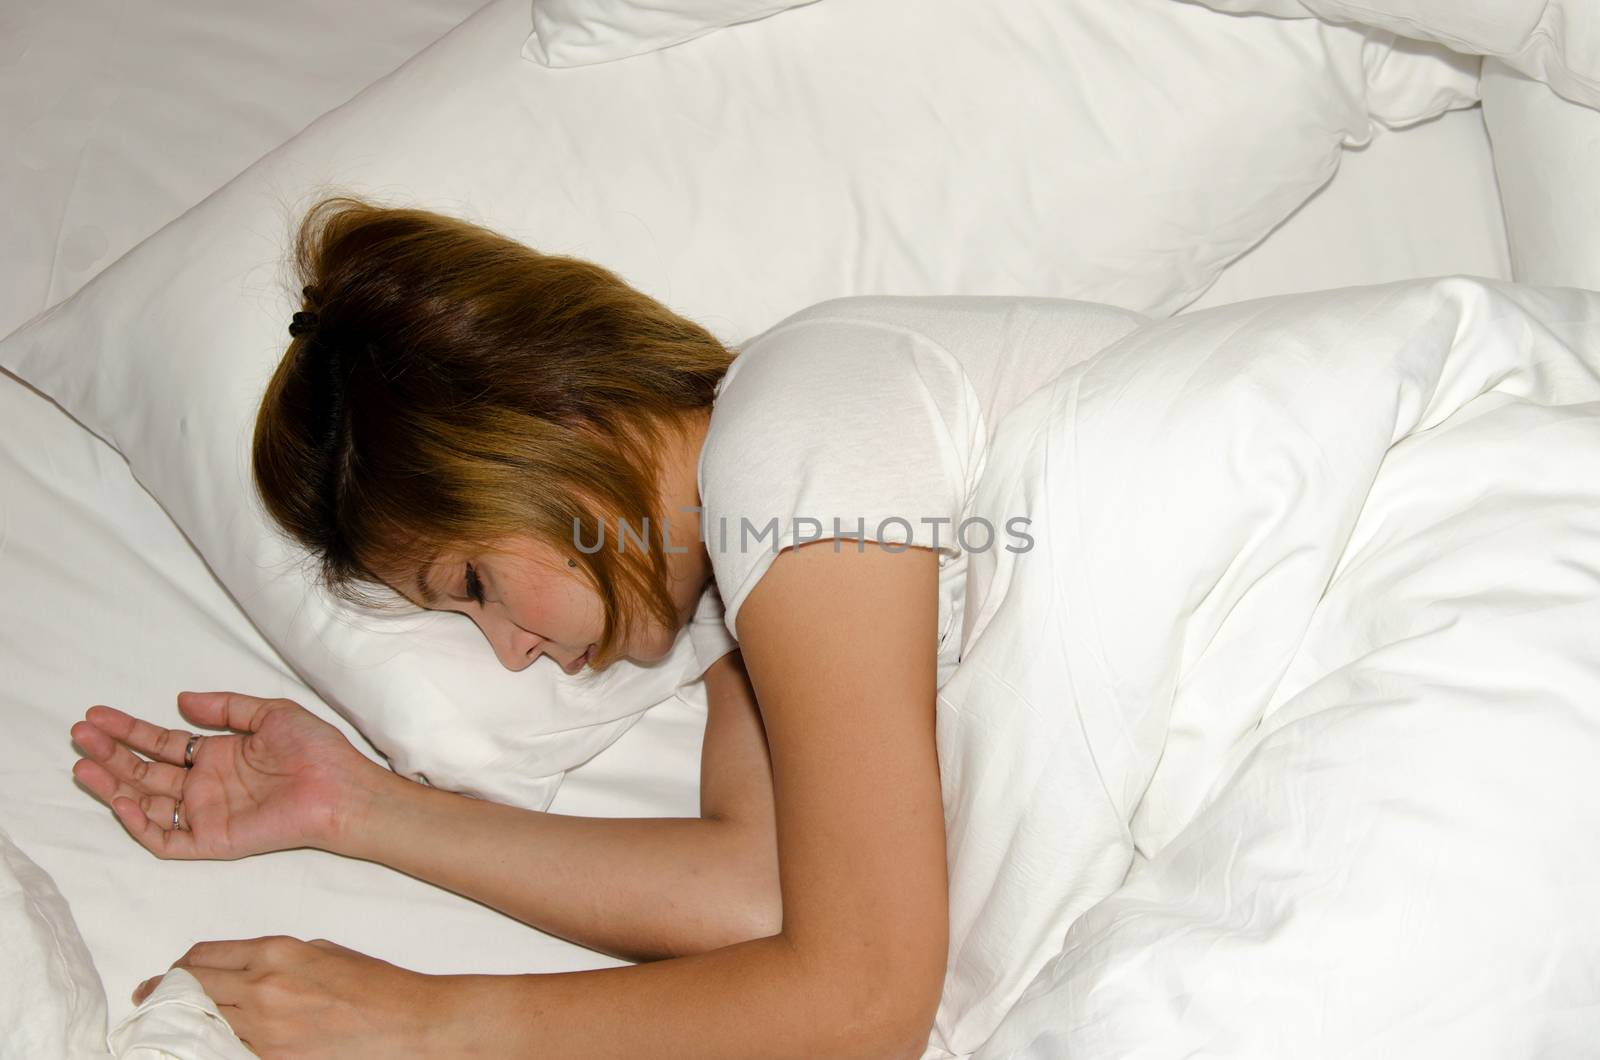 Woman sleep on bed by aoo3771